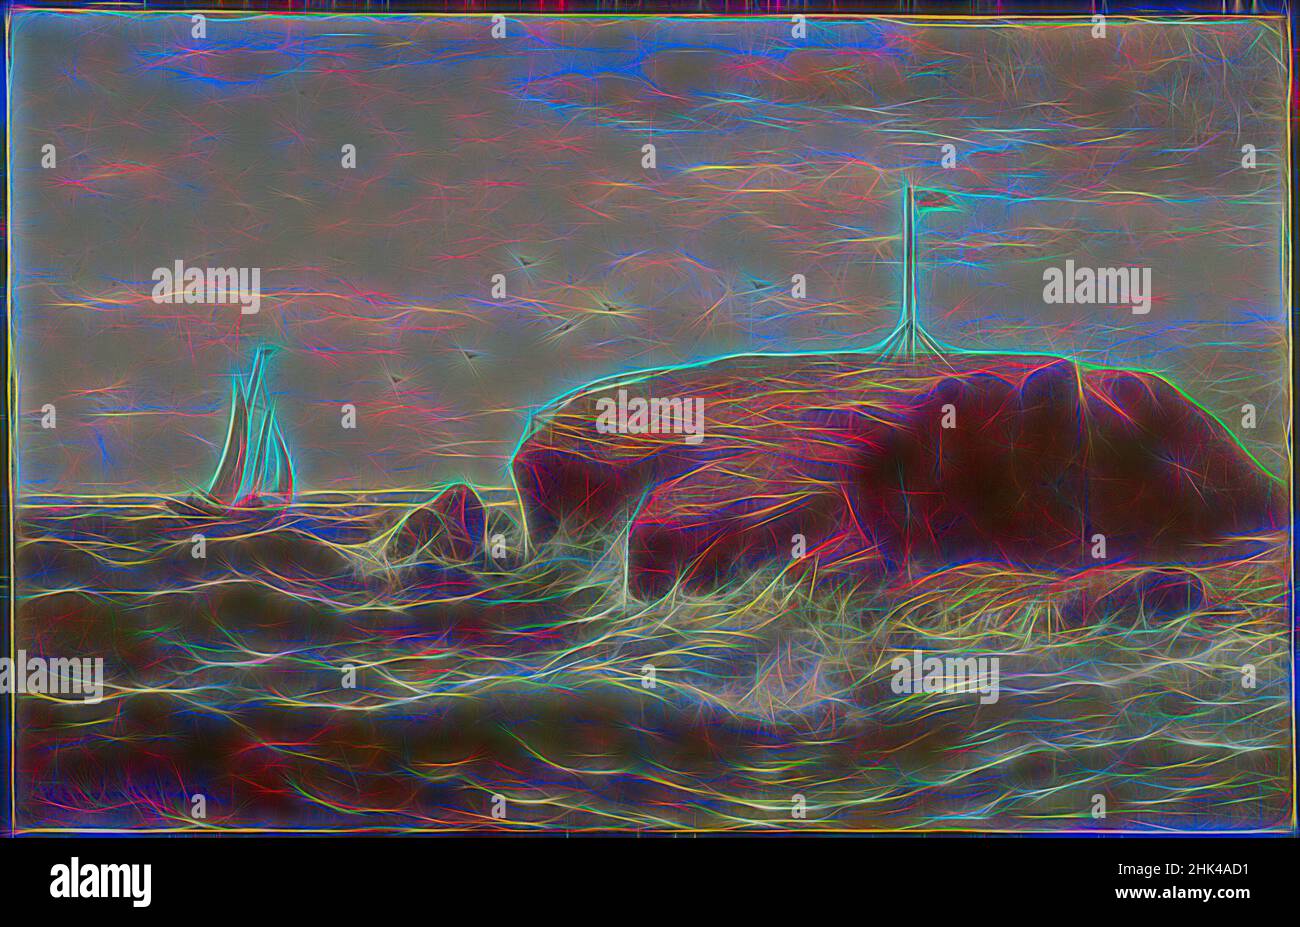 Inspiré par Seconnet Rock, New Bedford, Massachusetts, Robert Swain Gifford, américain, 1840-1905, huile sur toile, env. 1865, 14 3/16 x 22 3/16 po, 36 x 56,3 cm, peinture de paysage américain, océan Atlantique, oiseaux, noir et blanc, boulder, écrasement, côte est, côte est, drapeau, Hudson River, repensé par Artotop. L'art classique réinventé avec une touche moderne. Conception de lumière chaleureuse et gaie, de luminosité et de rayonnement de lumière. La photographie s'inspire du surréalisme et du futurisme, embrassant l'énergie dynamique de la technologie moderne, du mouvement, de la vitesse et révolutionne la culture Banque D'Images